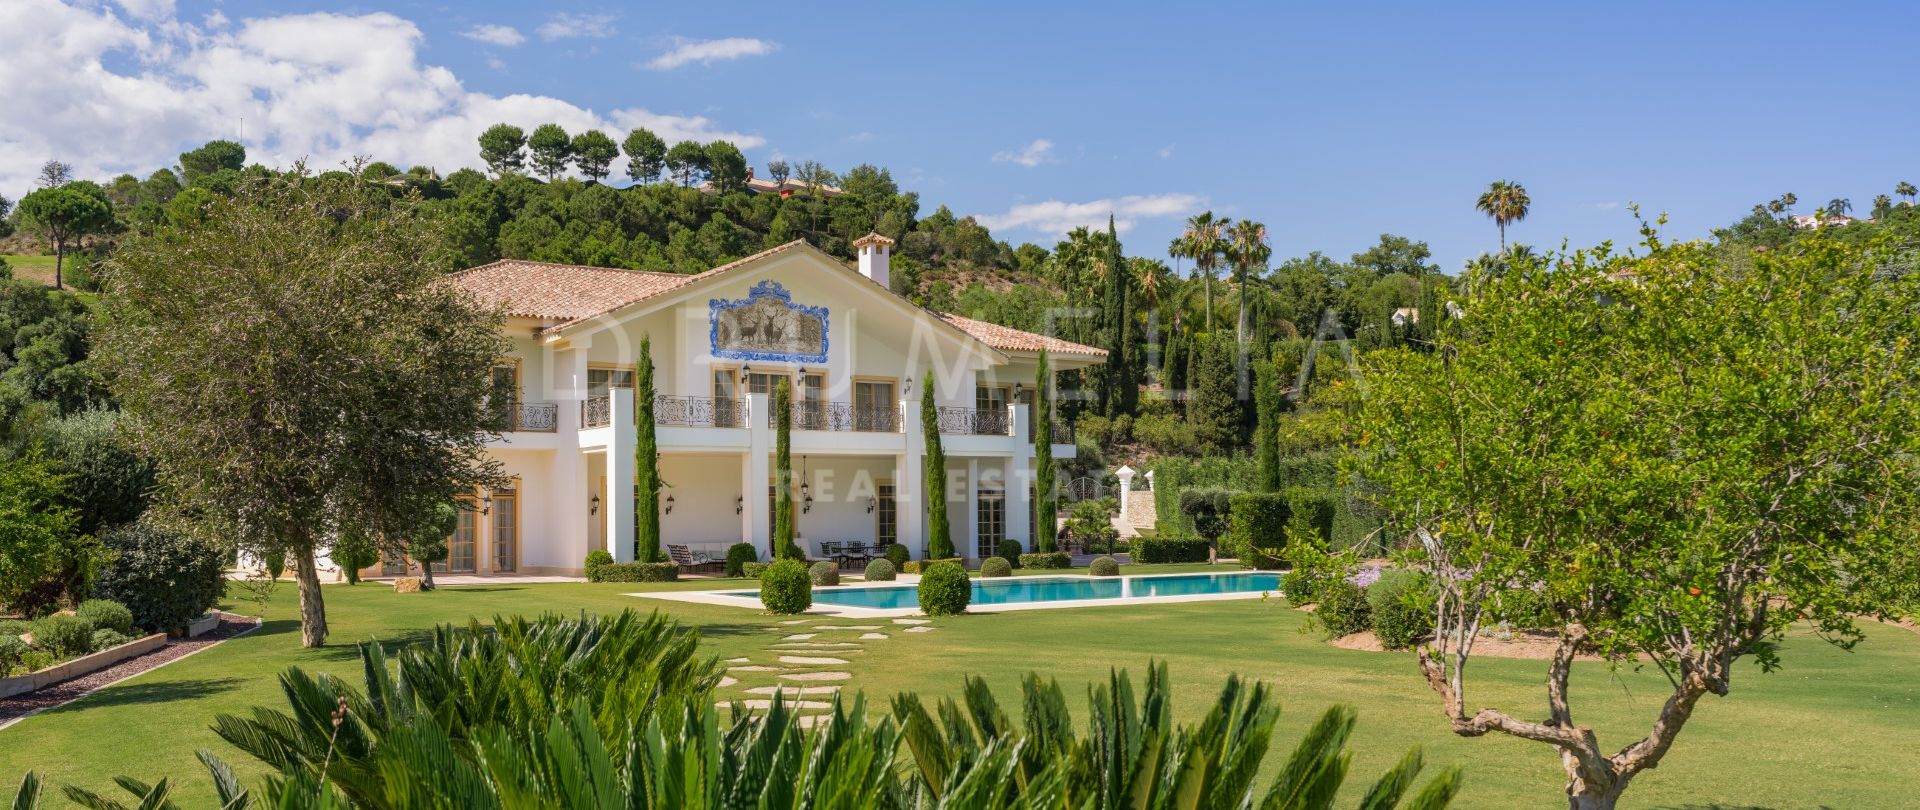 Magnifique manoir de style méditerranéen pour une vie luxueuse dans le quartier haut de gamme de La Zagaleta, Benahavis.